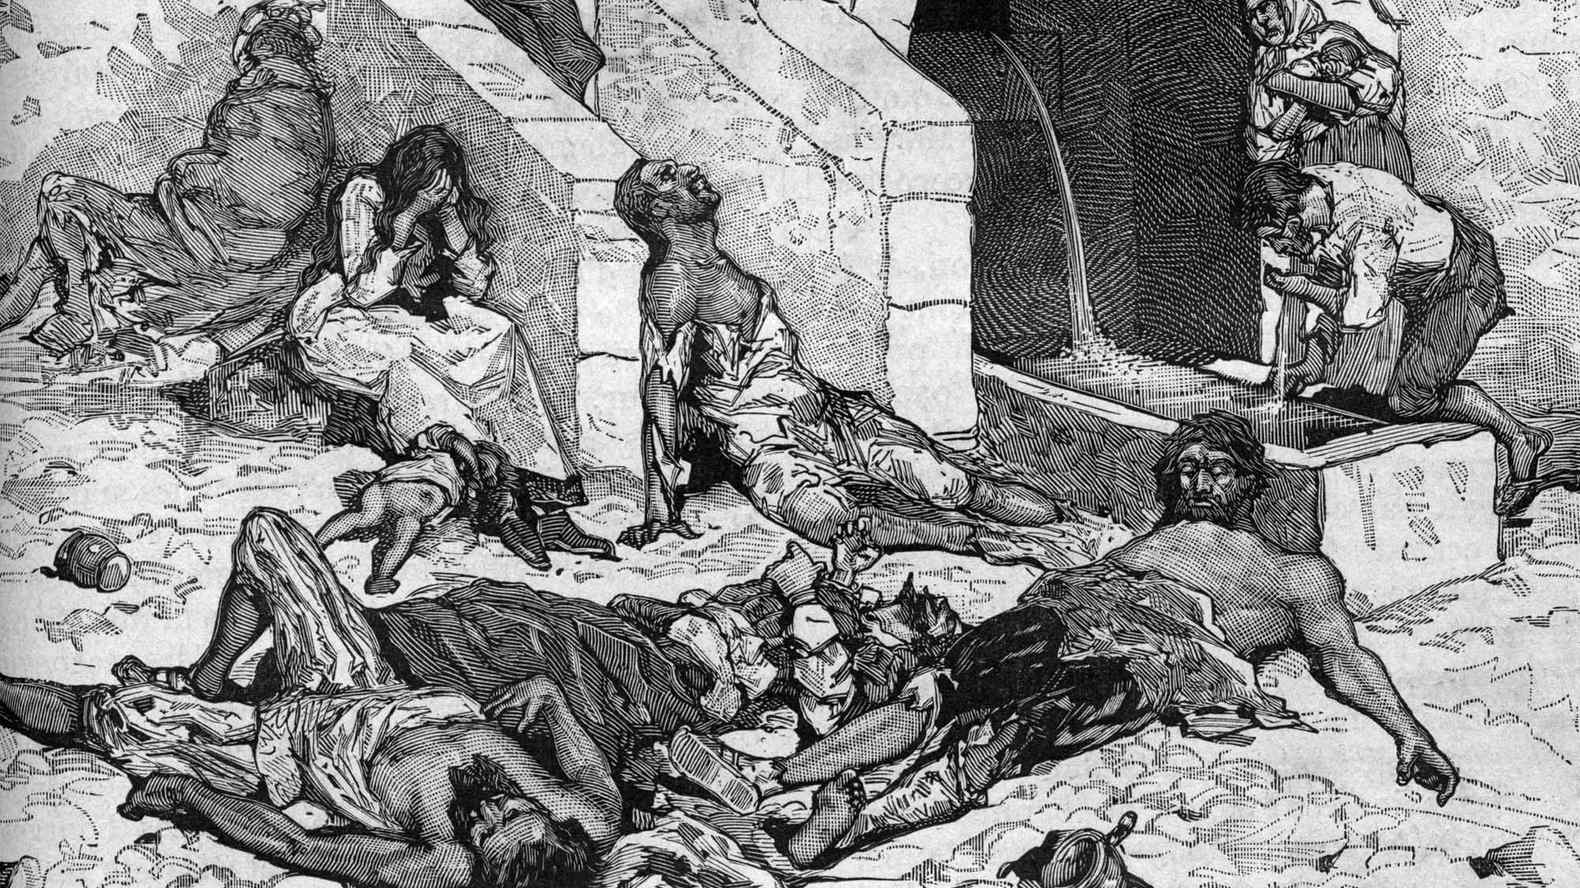 Nghề bắt chuột và các loài gặm nhấm: ‘Cái chết đen’ là một trong những đại dịch chết chóc nhất trong lịch sử nhân loại, cướp đi sinh mạng của hơn 200 triệu người châu Âu vào thế kỷ 14. Nguyên nhân bùng phát của đại dịch được cho là bởi bệnh dịch hạch lây truyền từ loài chuột. Vài trăm năm sau sự kiện này, số lượng các loài gặm nhấm ở châu Âu lại tăng vọt khiến người dân lo ngại. Dù không phải loài gặm nhấm nào cũng lây bệnh dịch hạch nhưng chúng vẫn khiến người dân châu Âu căm ghét khi phá hoại đồ đạc, mùa màng.